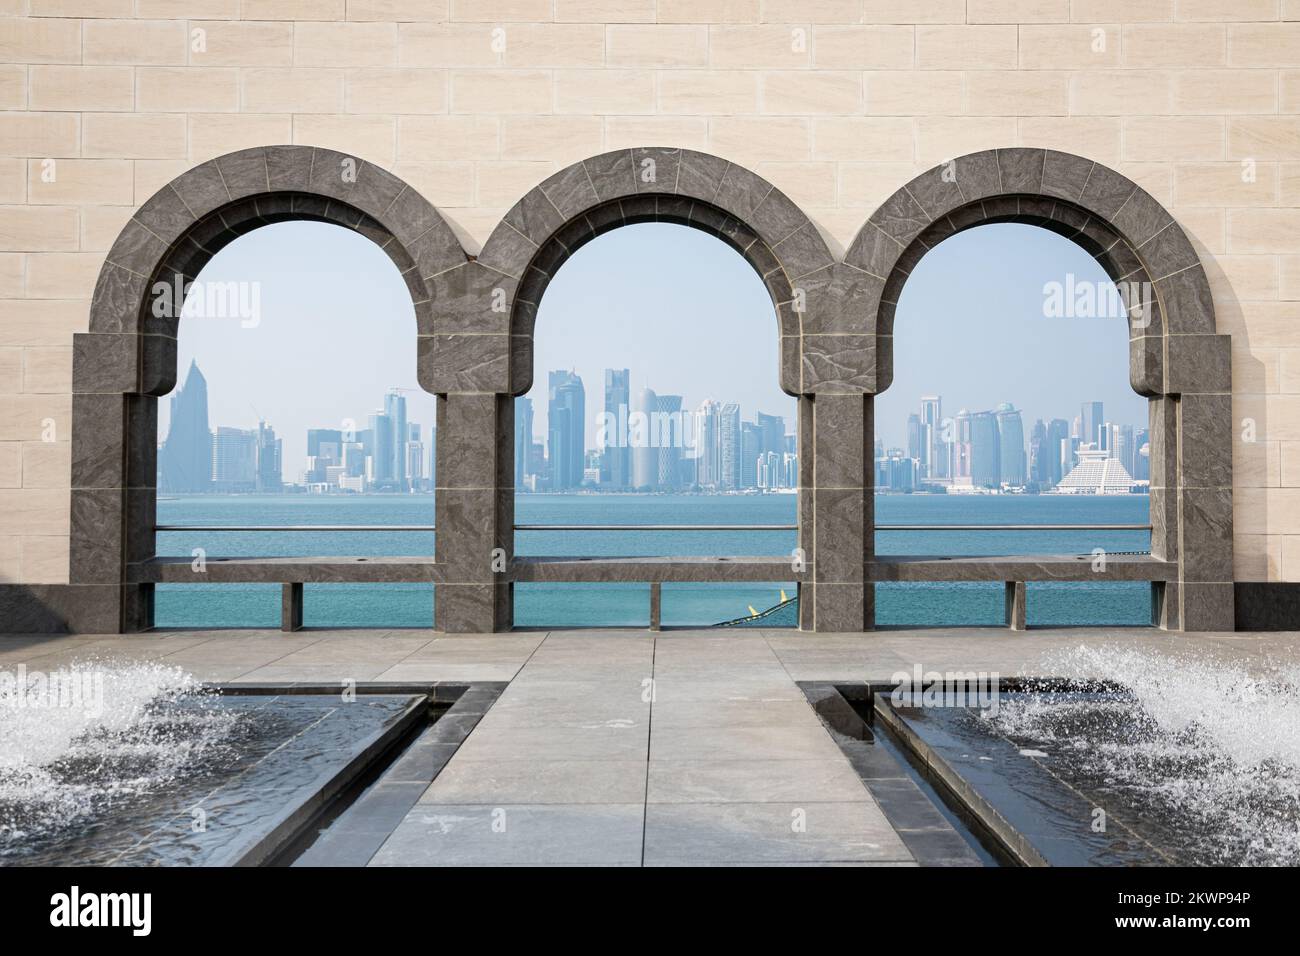 Lo skyline di Doha attraverso gli archi del Museo d'arte islamica, Qatar Foto Stock